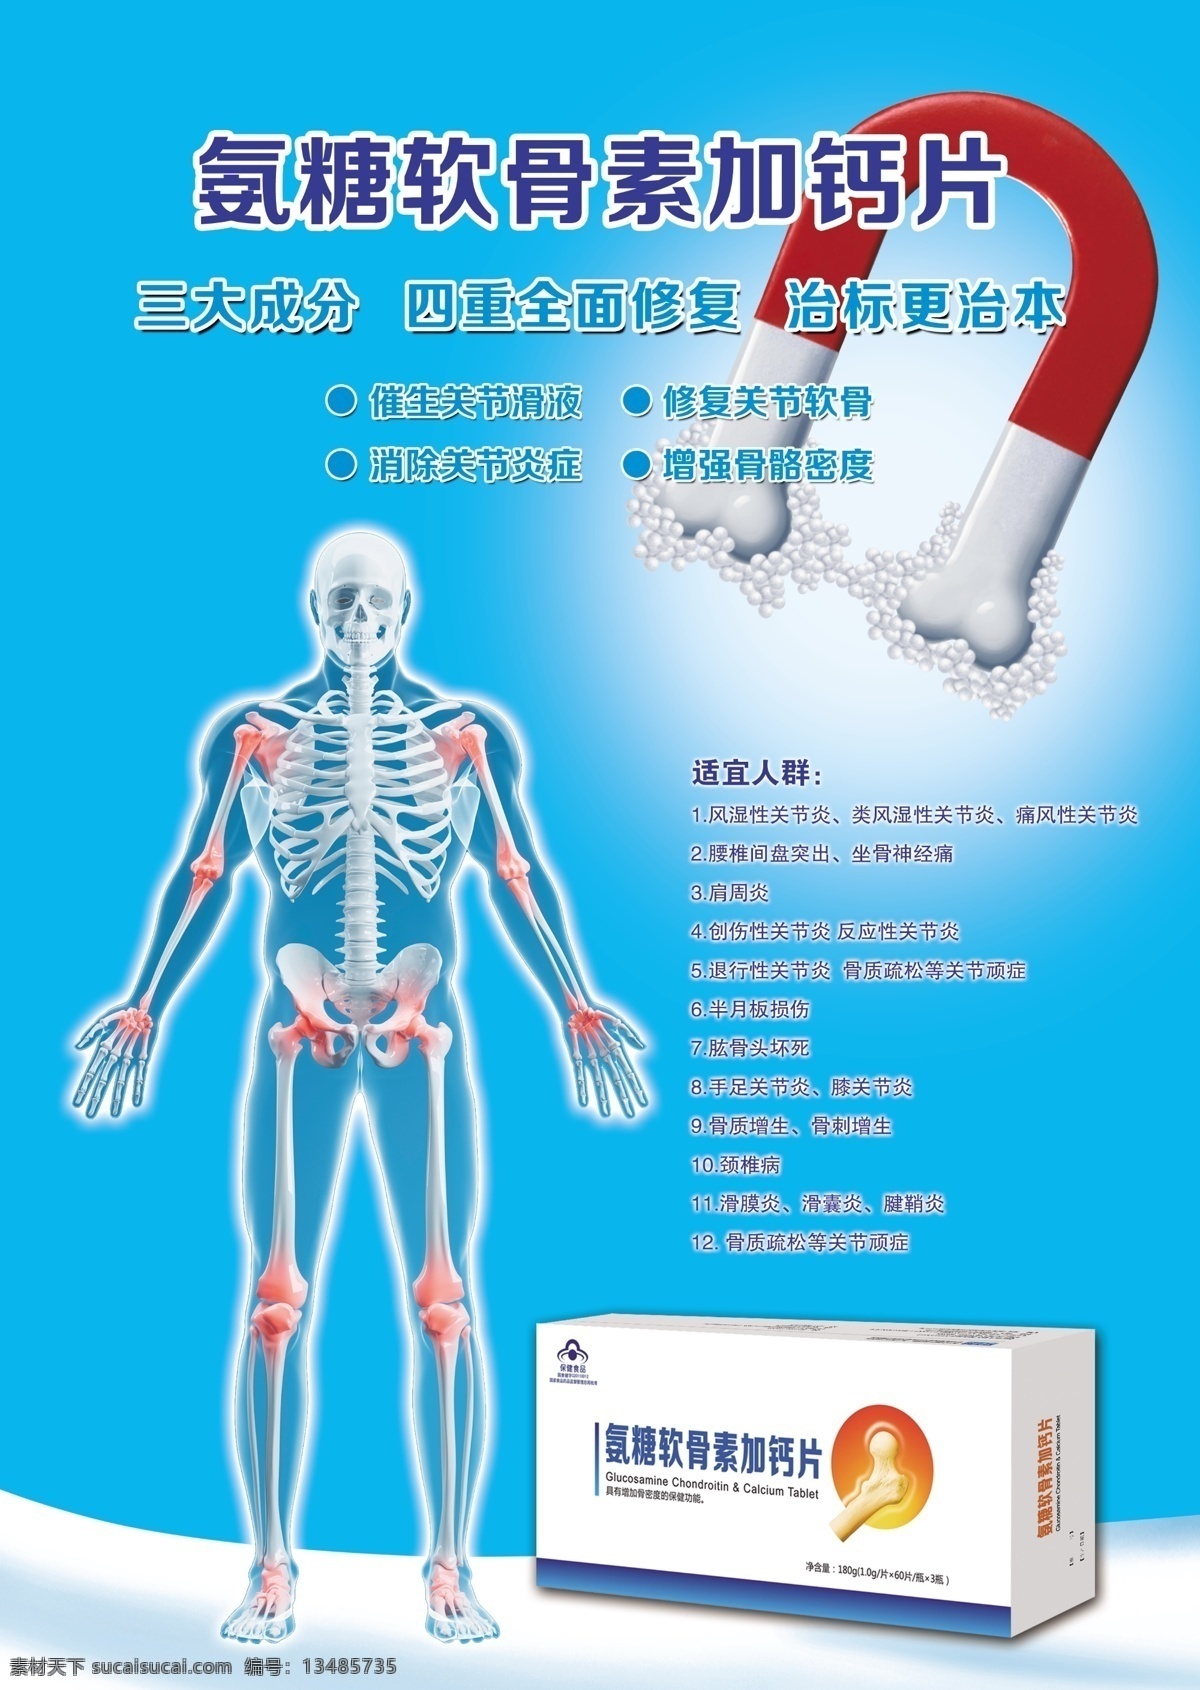 产品海报 补钙 钙片 强身健体 人体健康 dm宣传单 青色 天蓝色